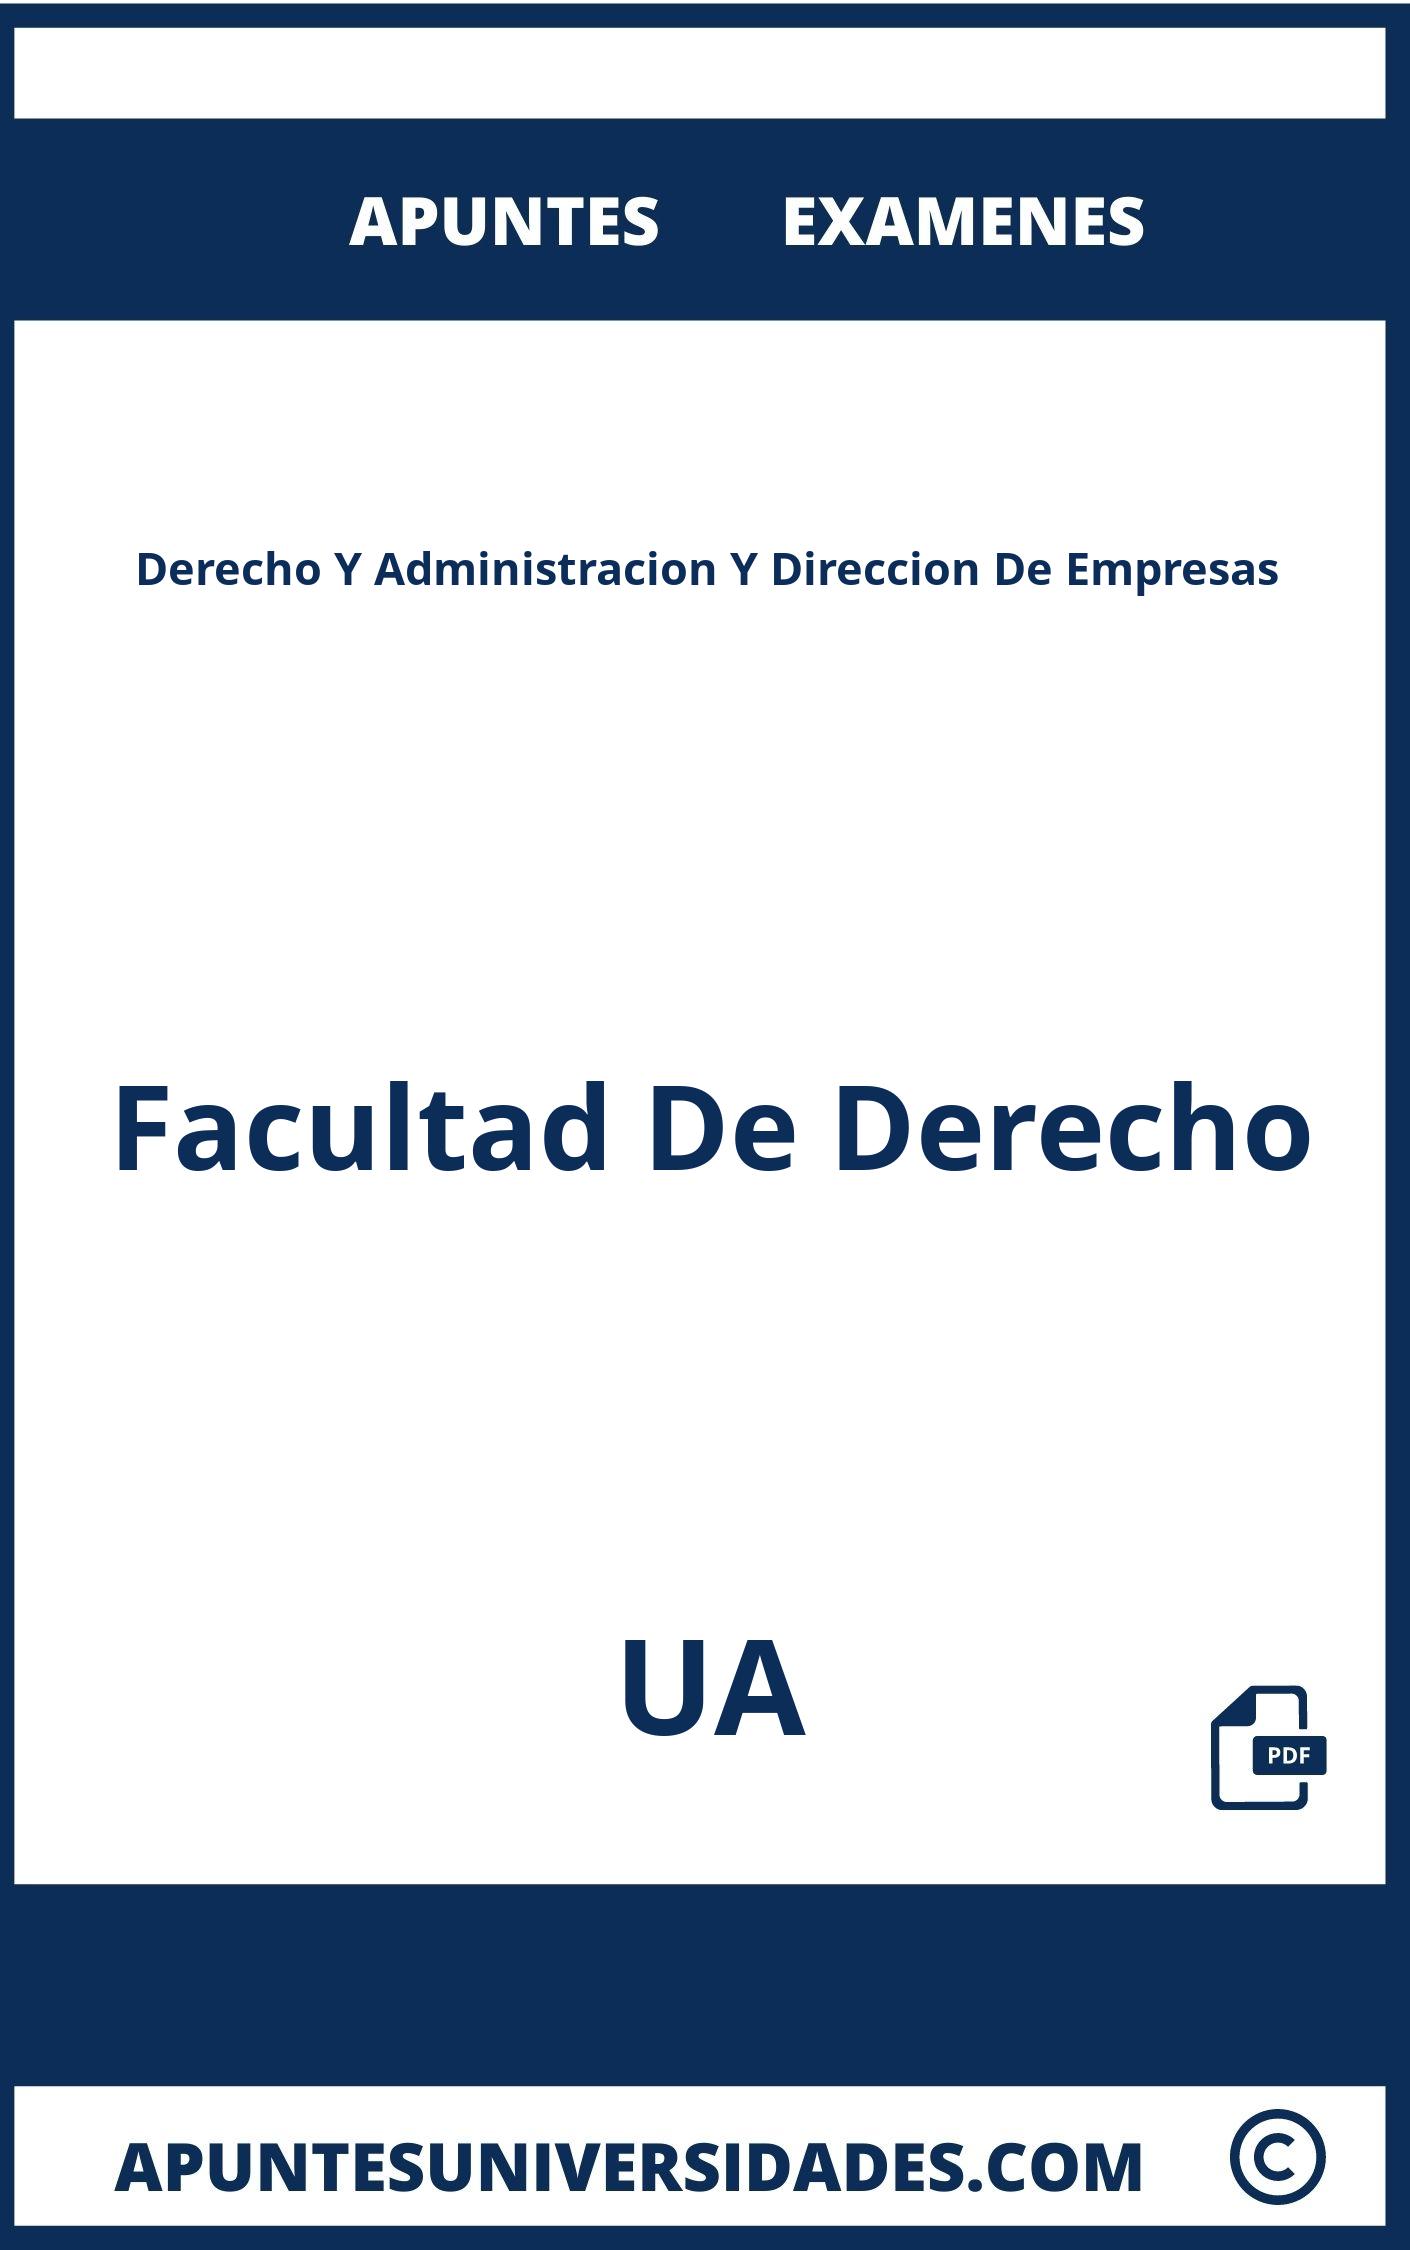 Apuntes Examenes Derecho Y Administracion Y Direccion De Empresas UA